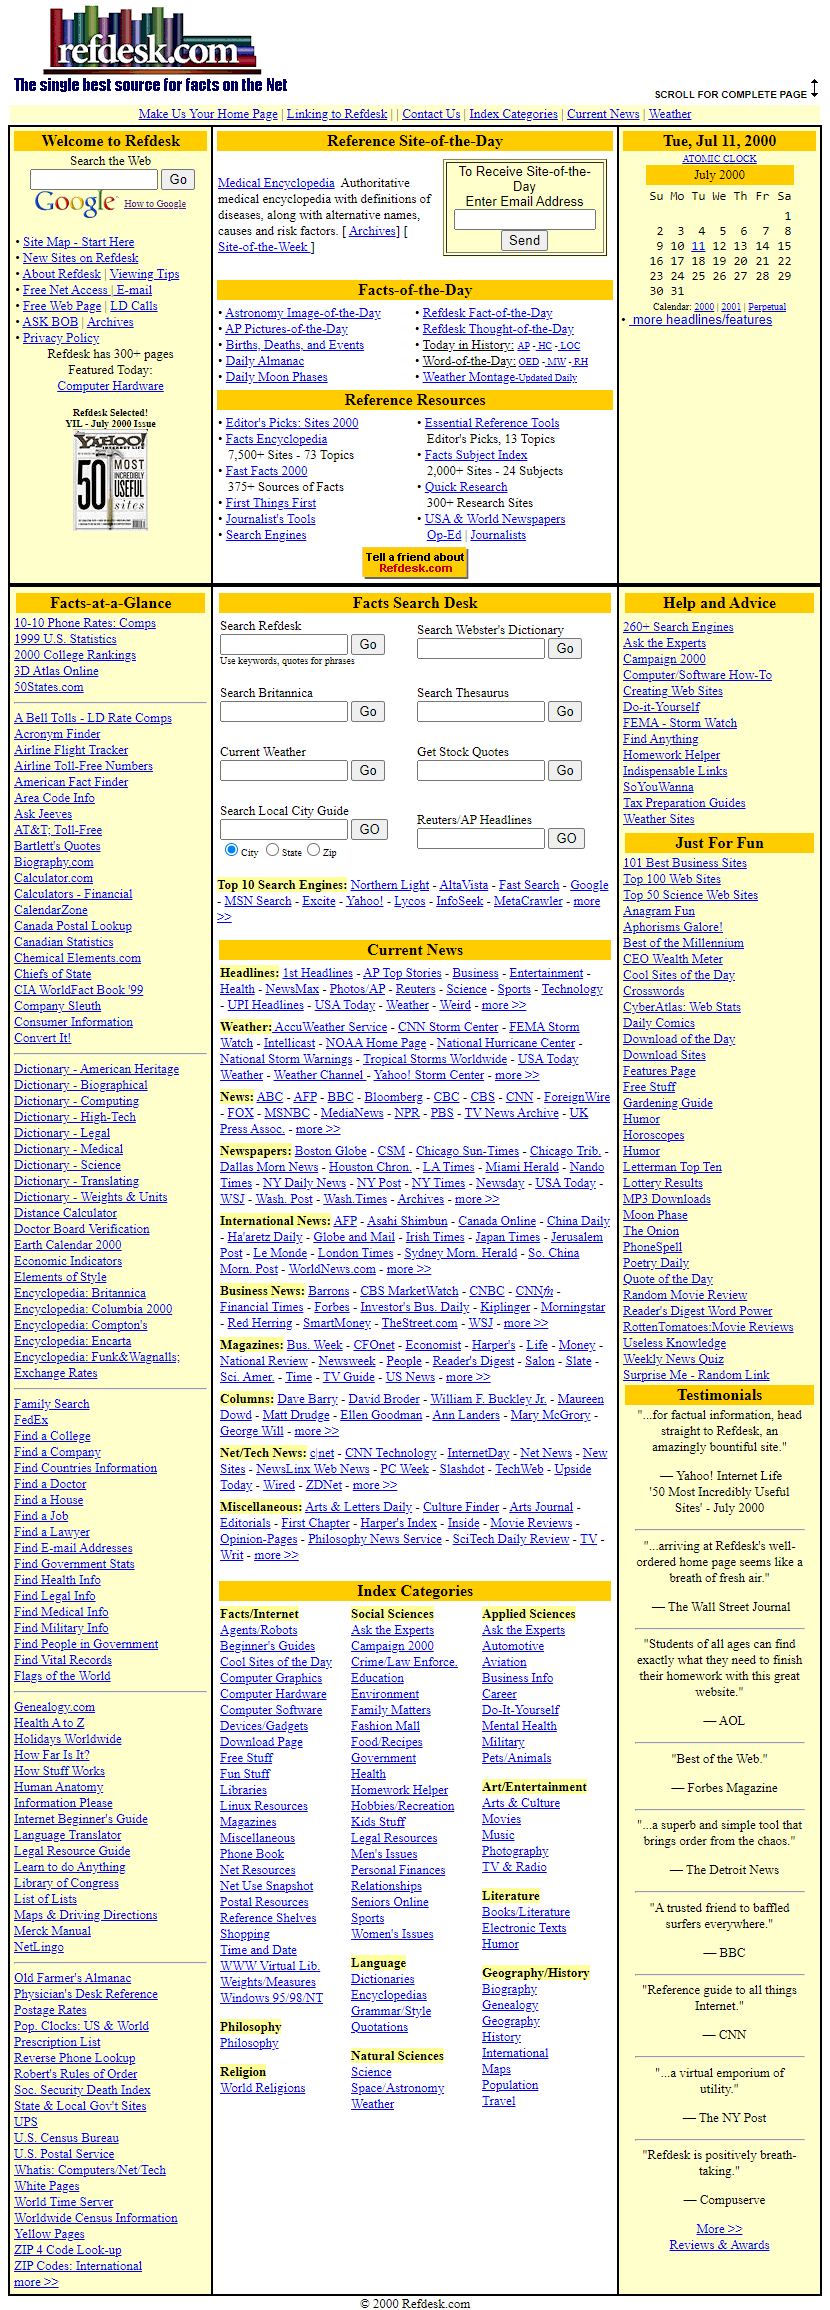 Refdesk.com in 2000